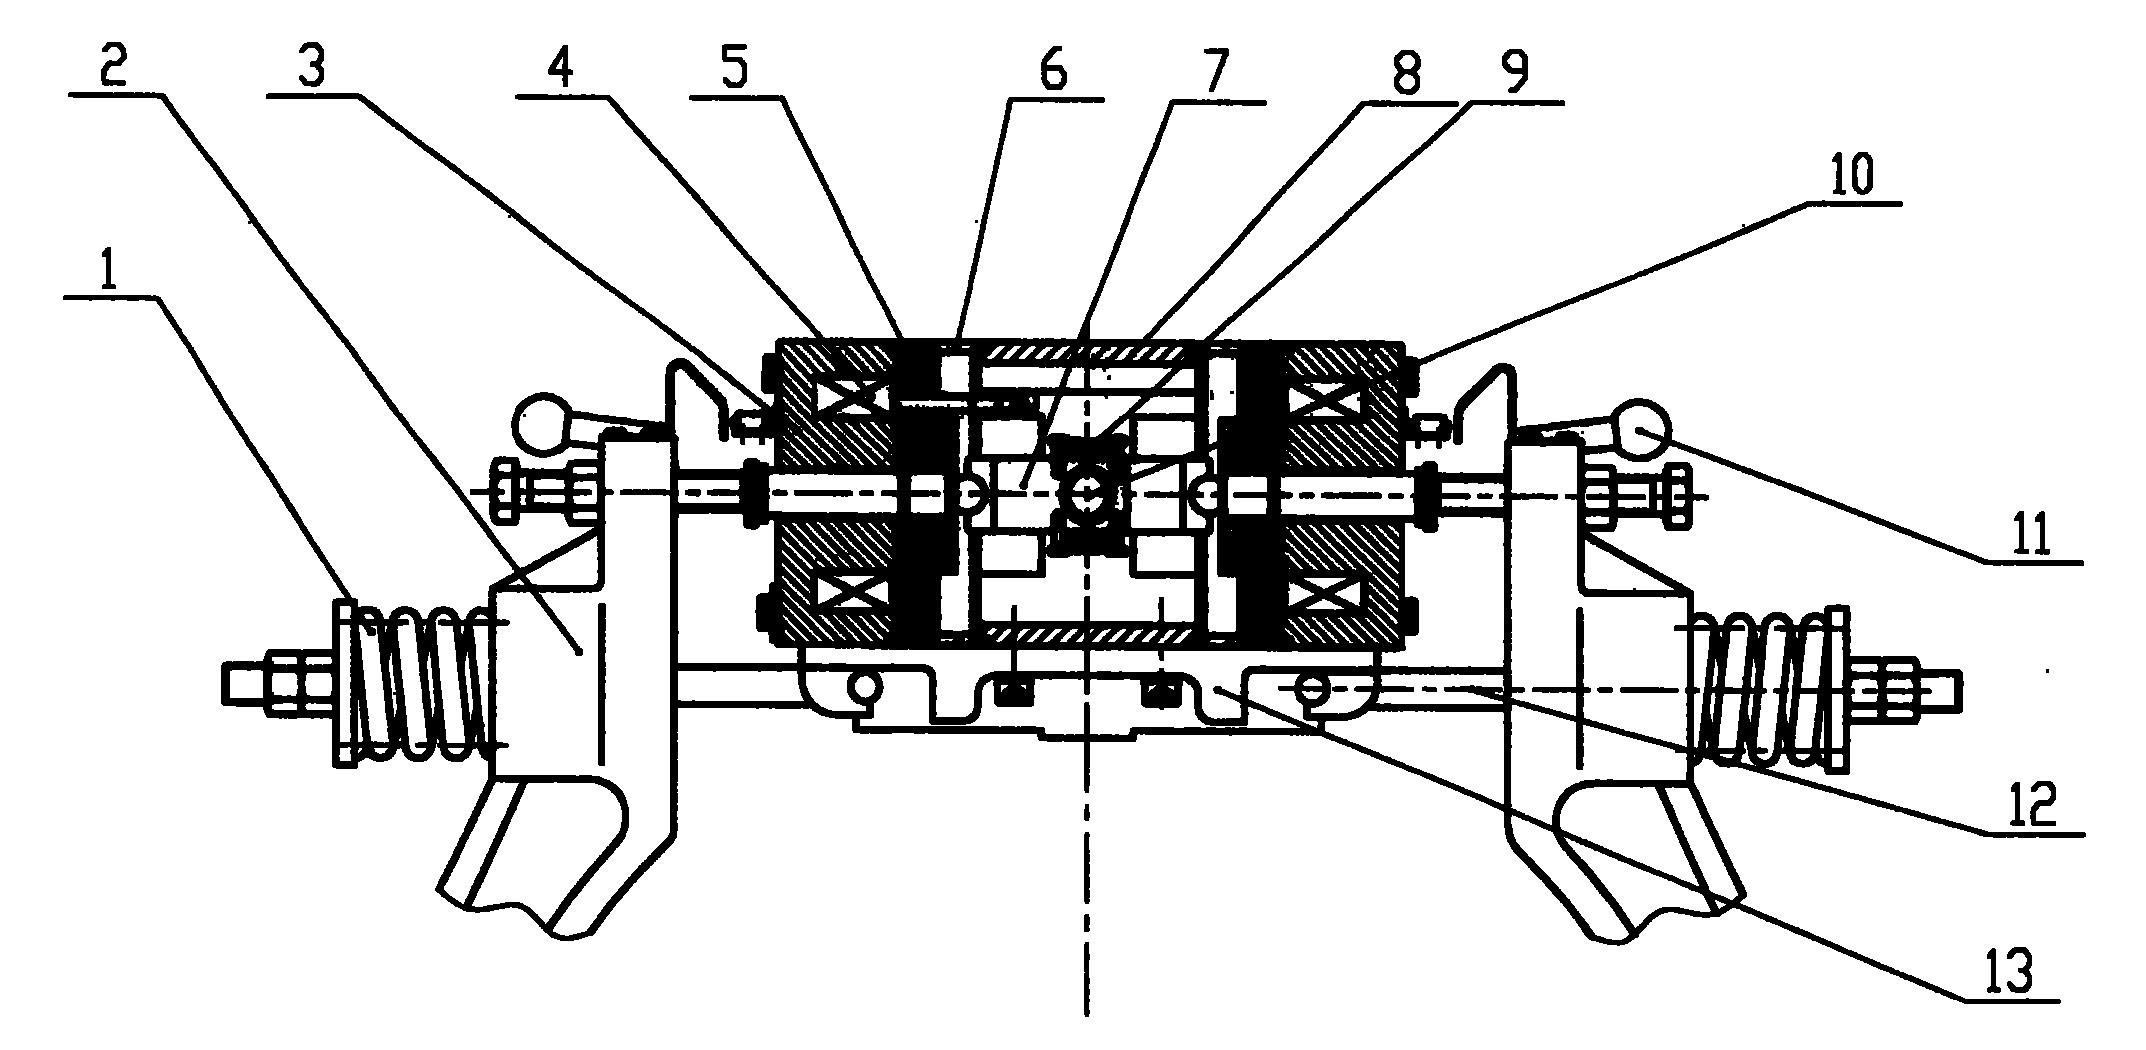 曳引机制动器结构图图片